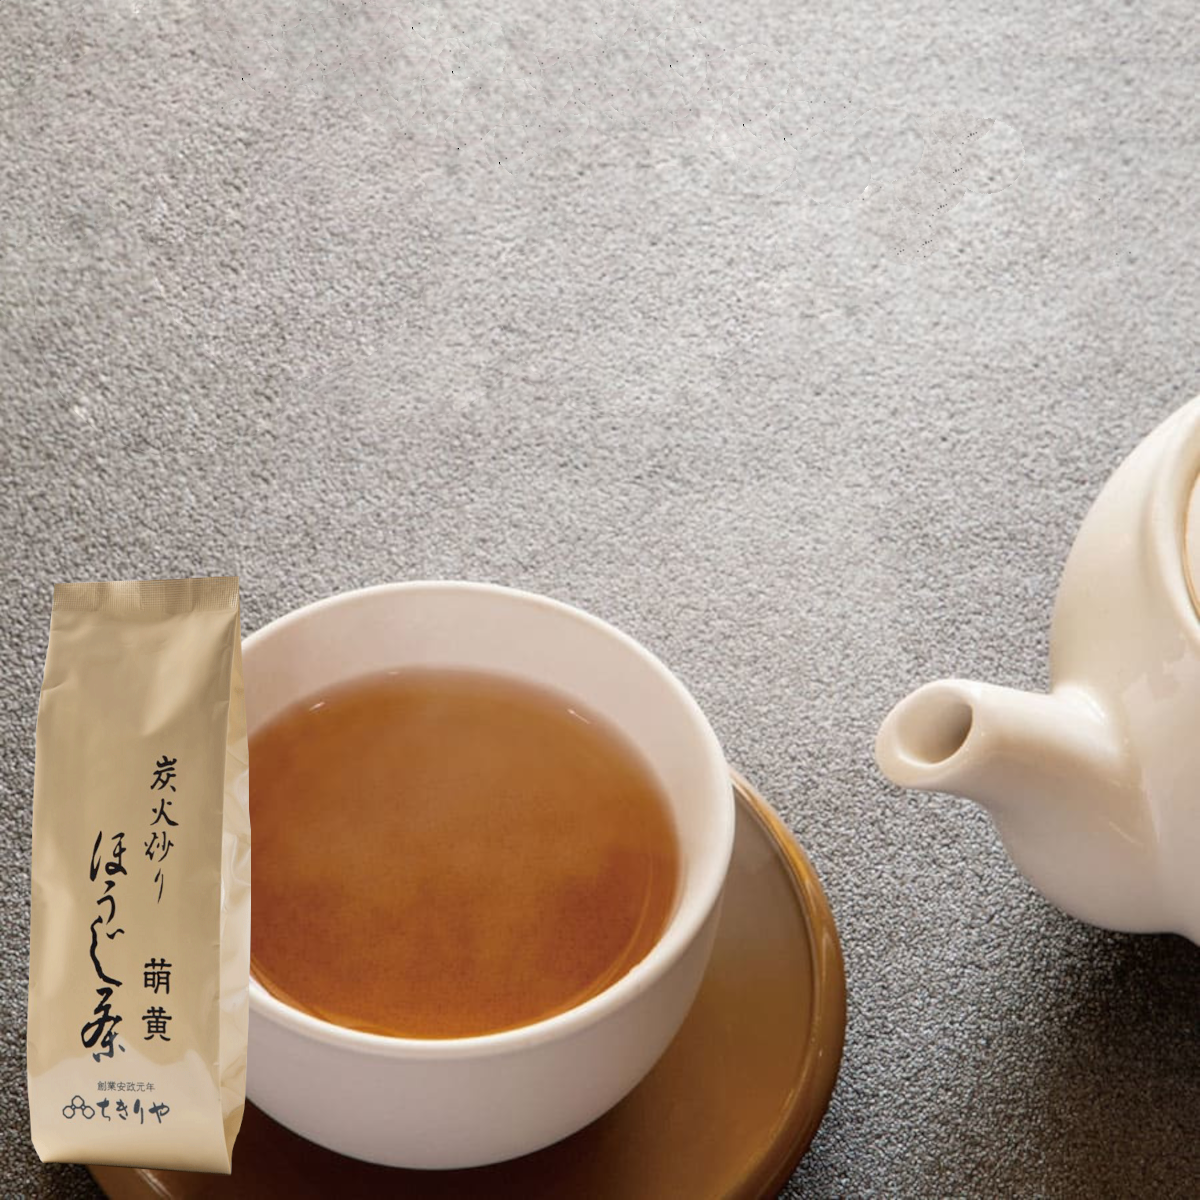 Hojicha « Moegi » torréfié sur un lit de charbon (Thé vert japonais torréfié) – 100g - feuilles de thé en vrac